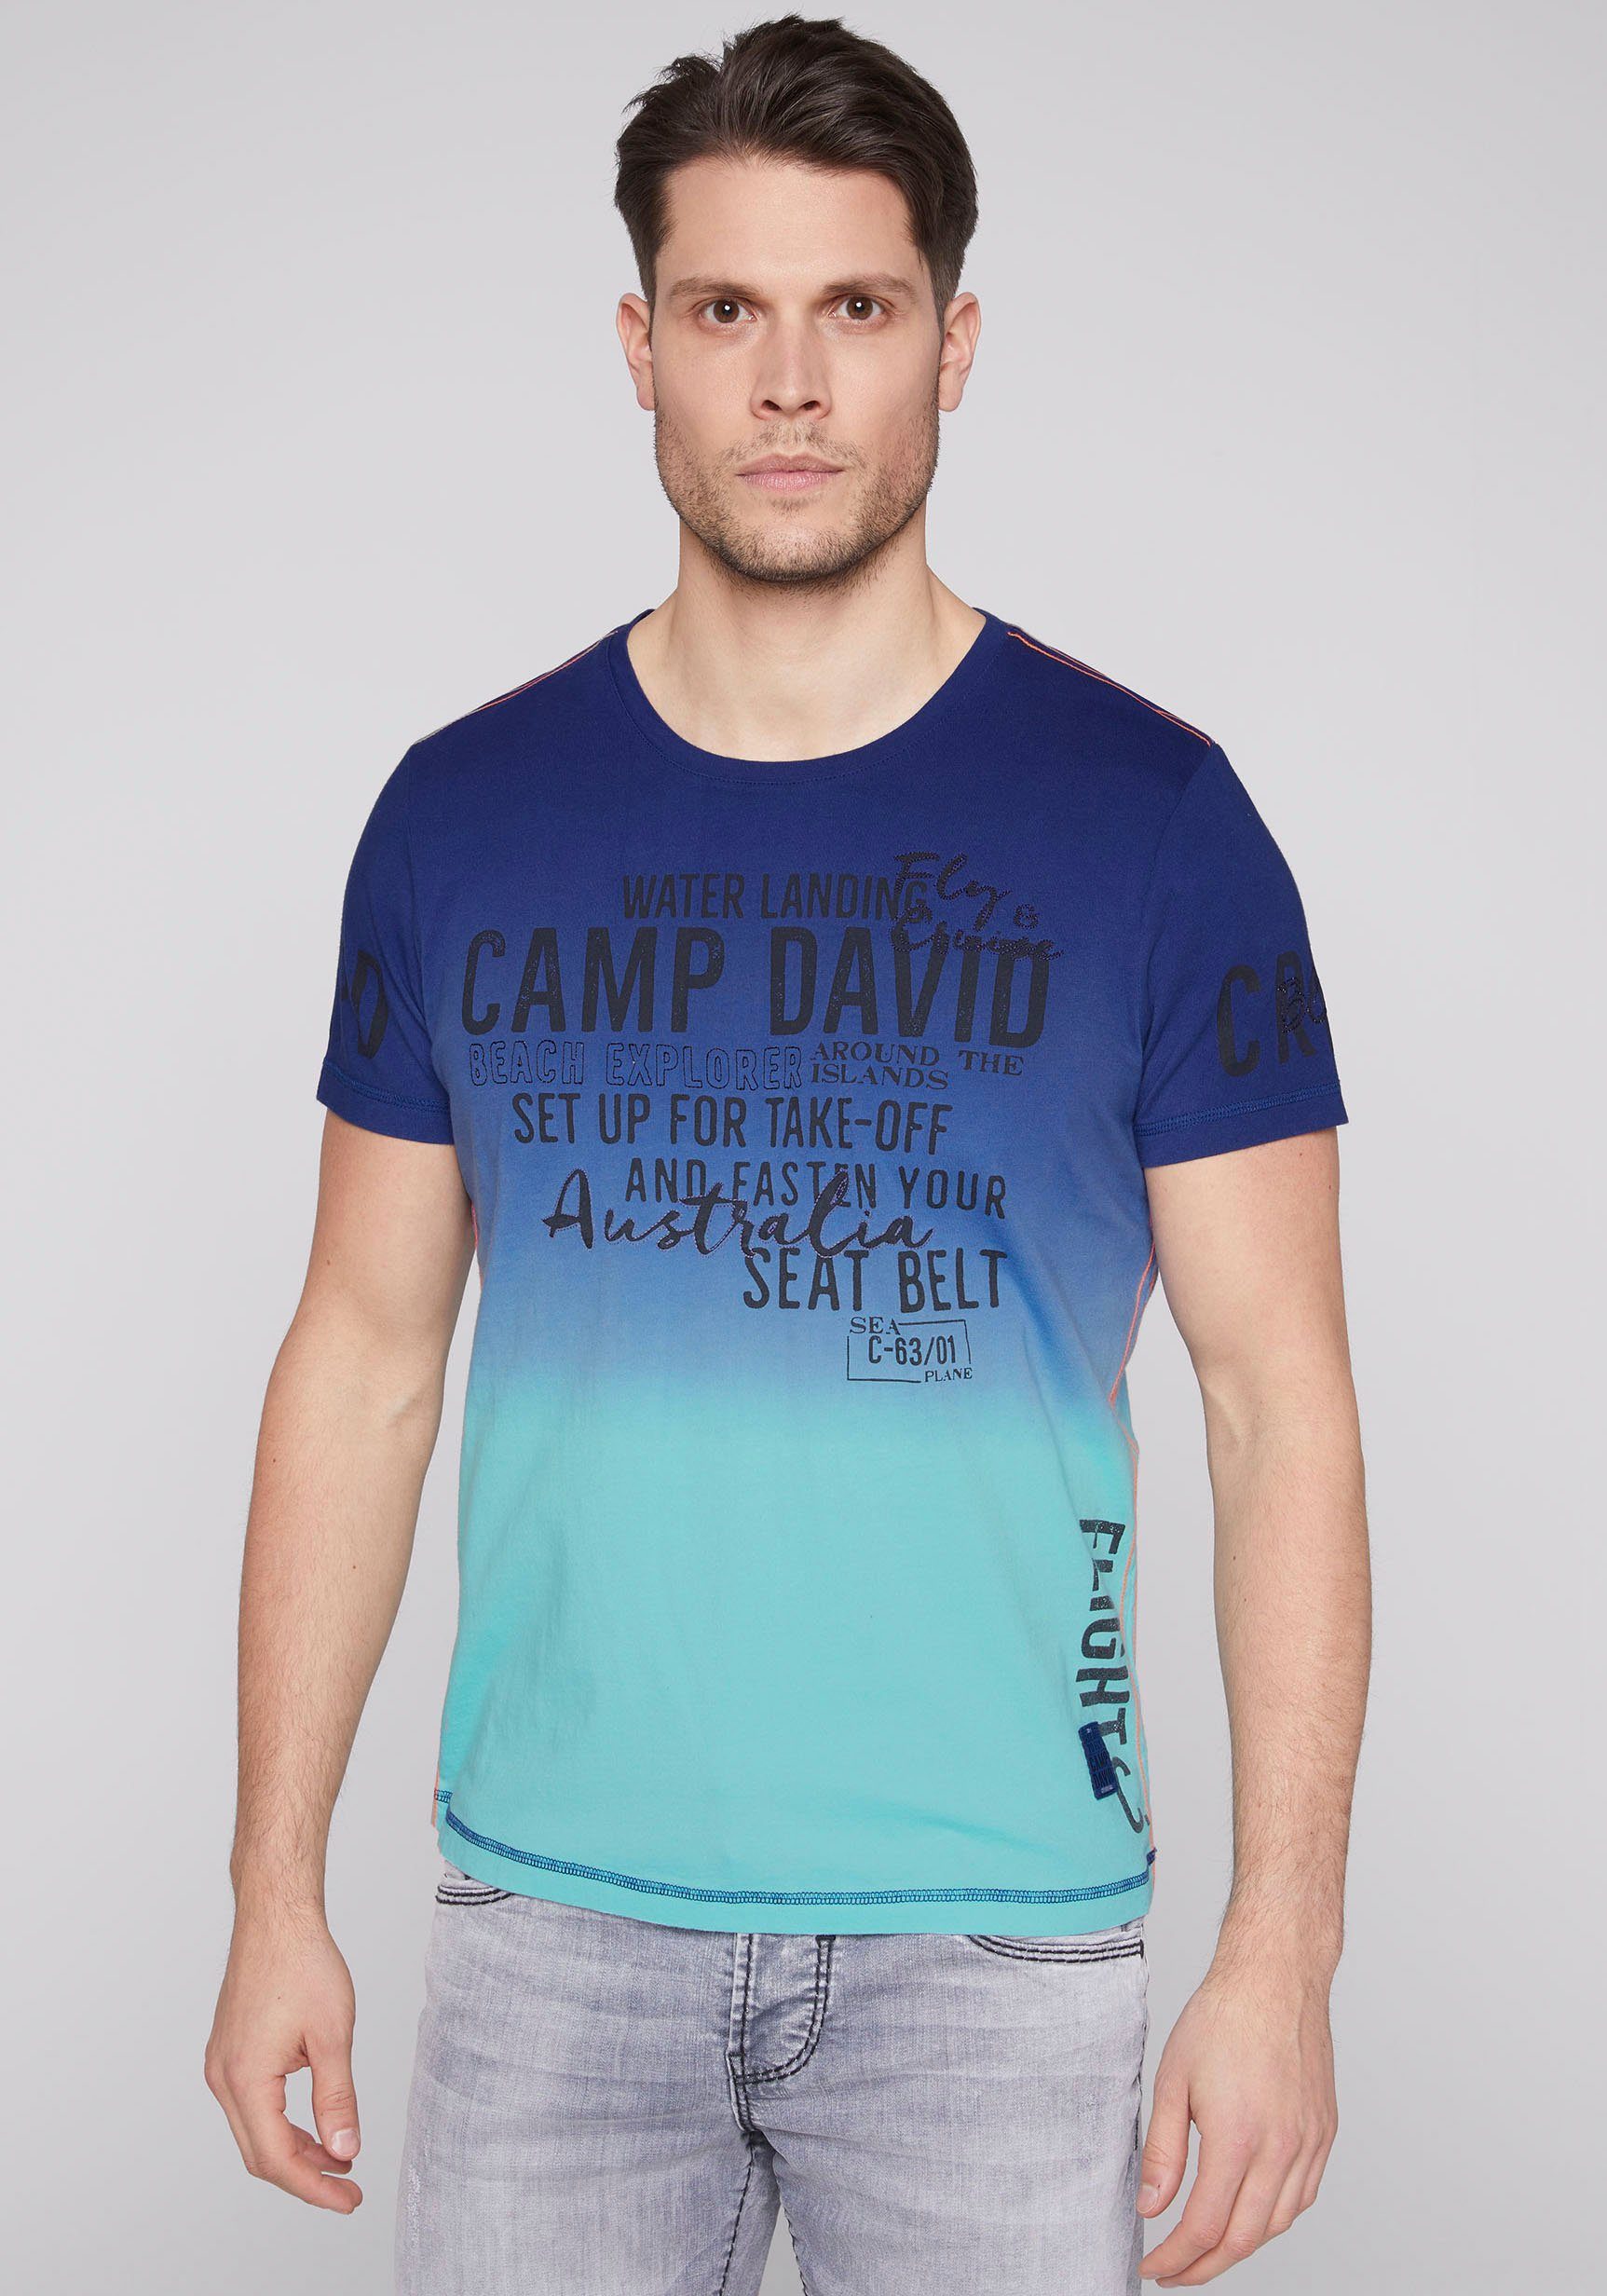 Camp David Herren Shirts online kaufen | OTTO